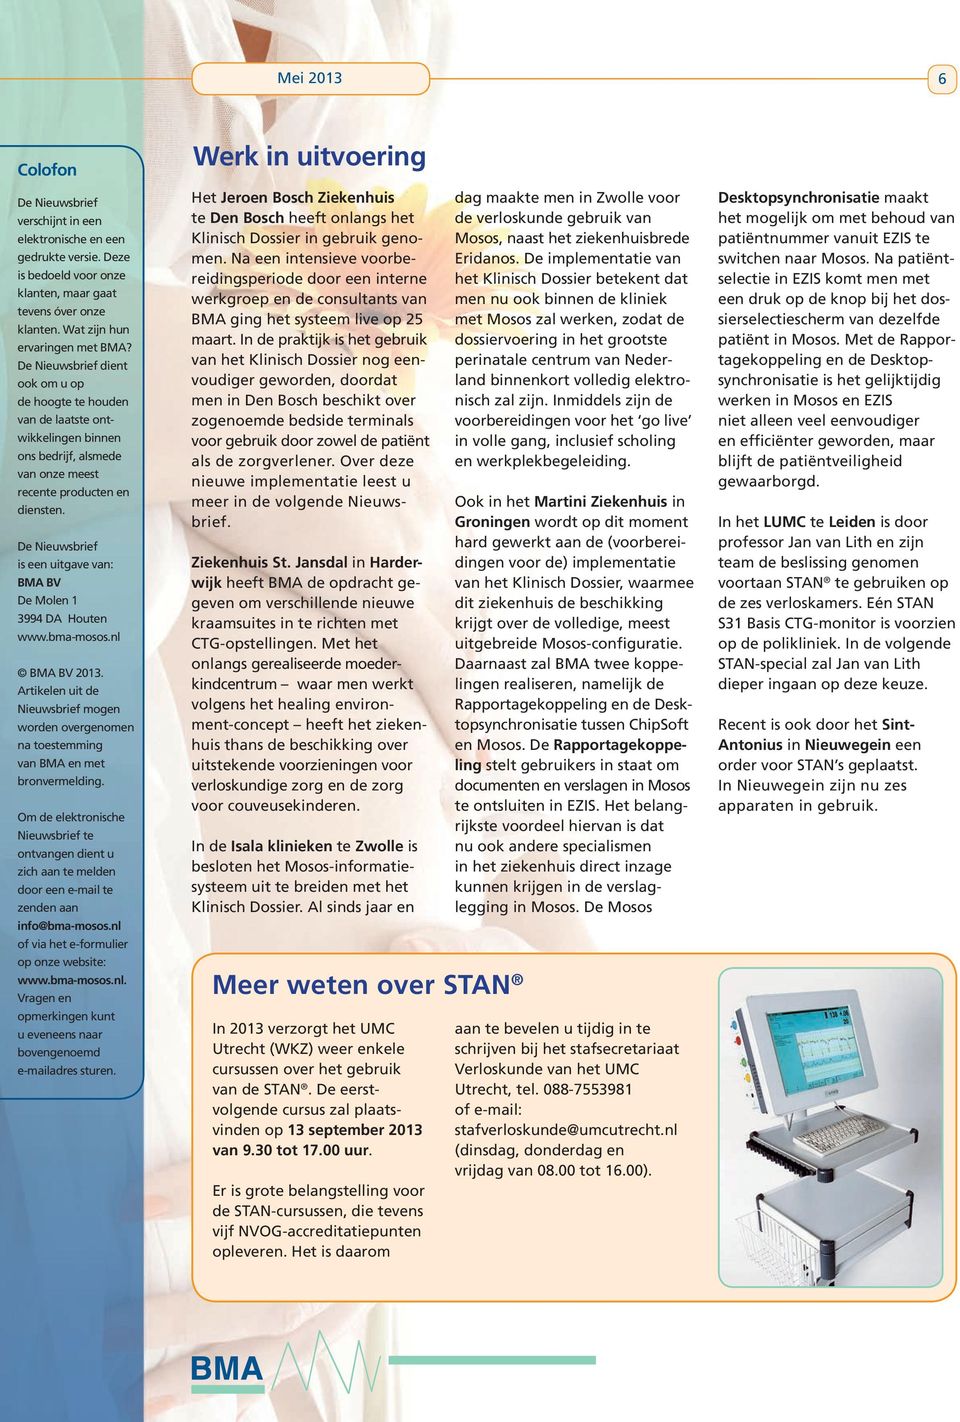 De Nieuwsbrief is een uitgave van: BMA BV De Molen 1 3994 DA Houten www.bma-mosos.nl BMA BV 2013. Artikelen uit de Nieuwsbrief mogen worden overgenomen na toestemming van BMA en met bronvermelding.